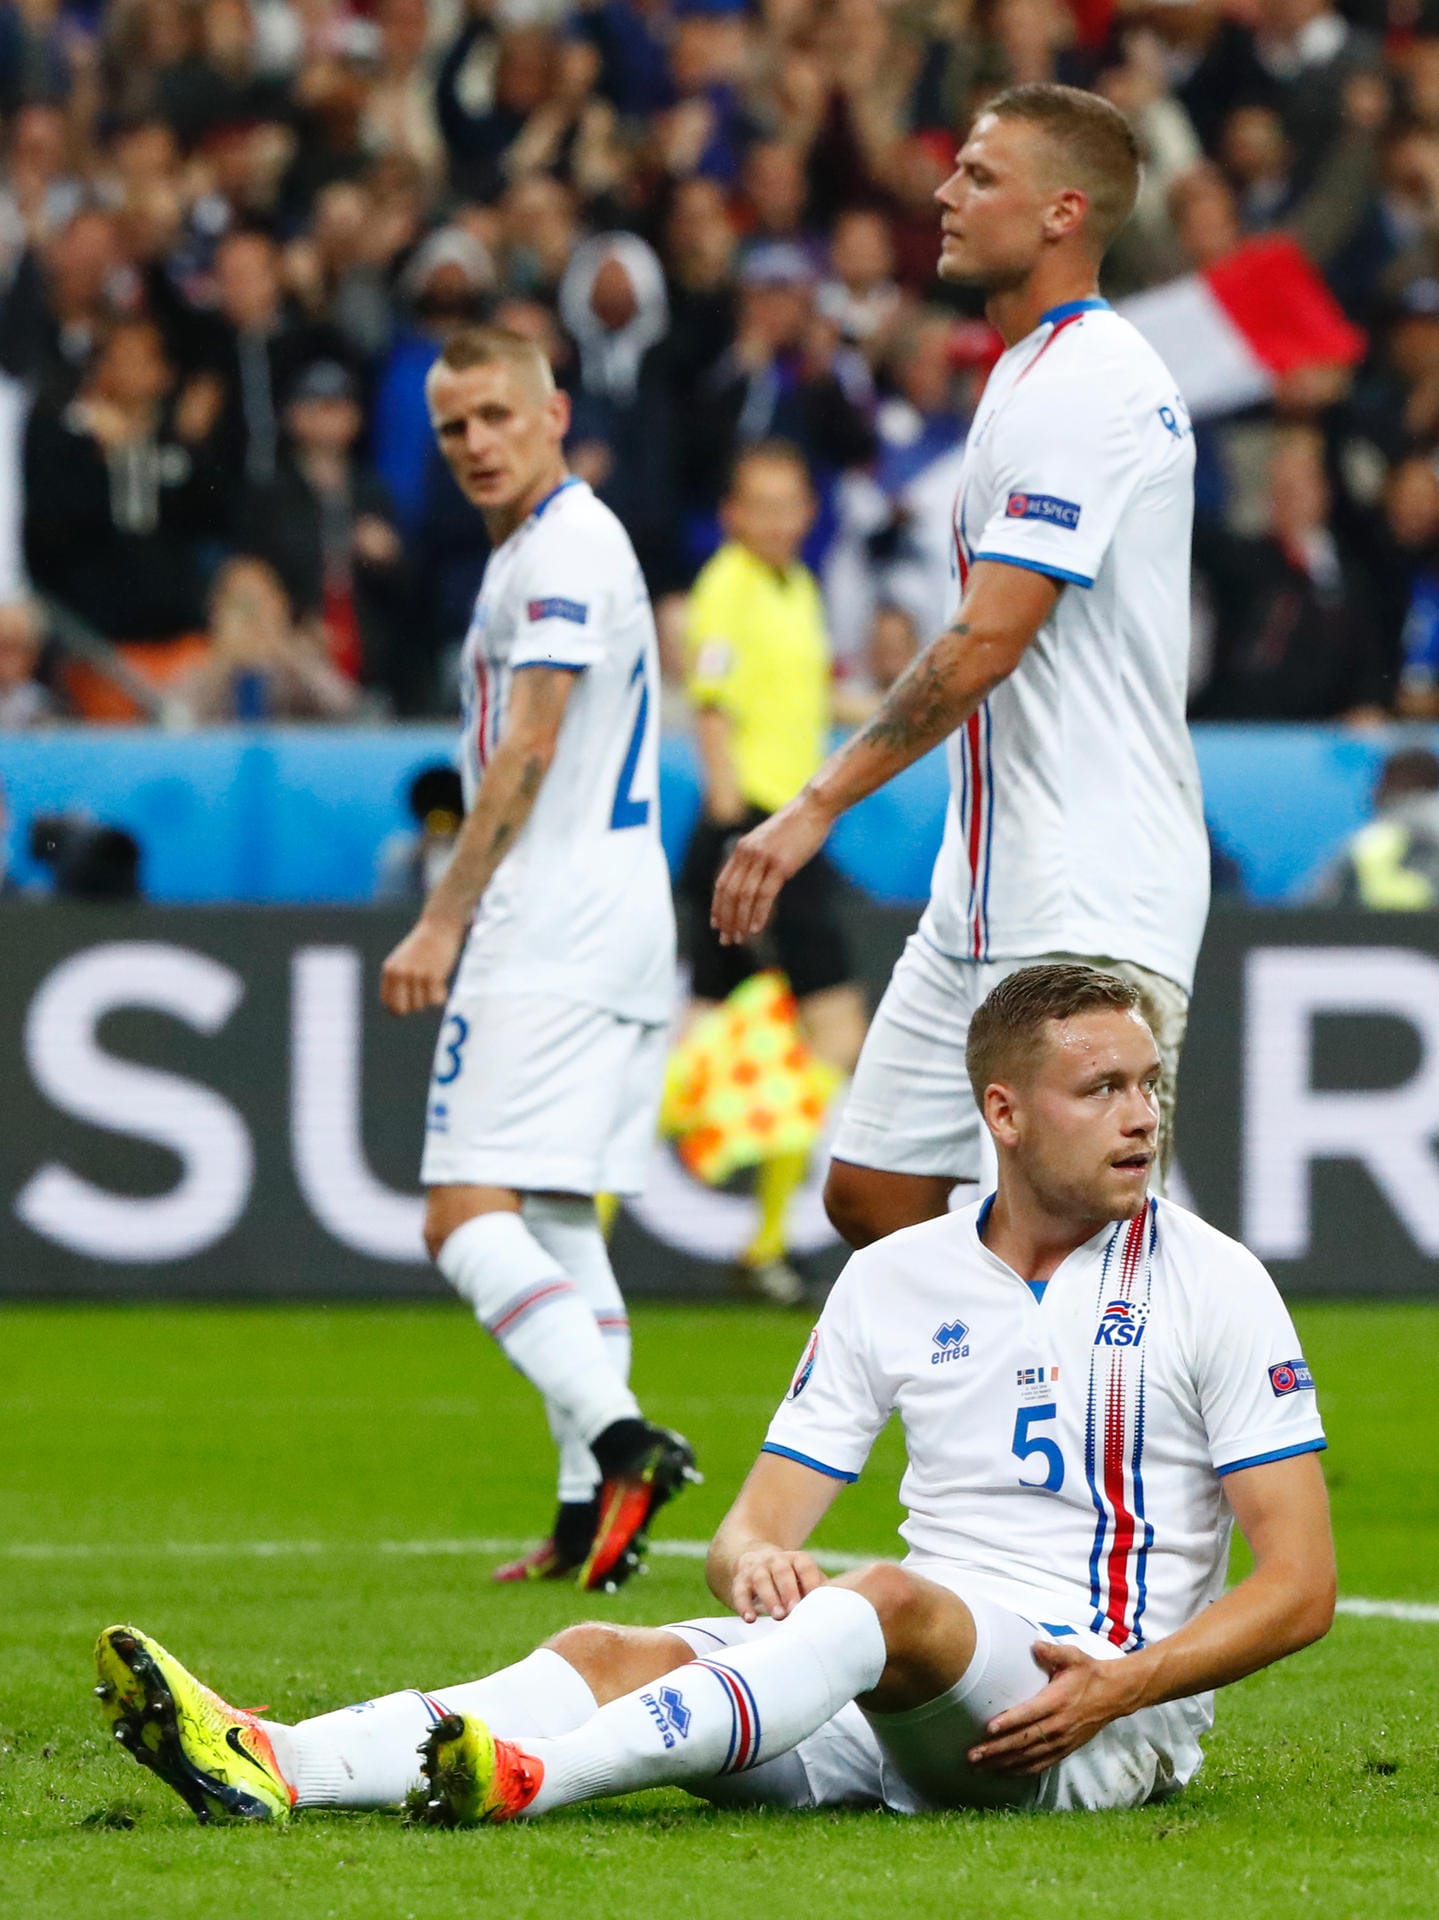 In der 84. Minute verkürzt dann Bjarnasson noch auf 2:5, doch für mehr reicht es nicht. Mit sieben Treffern geht somit die bislang torreichste Partie der EM zu Ende. Gastgeber Frankreich trifft im Halbfinale auf die DFB-Elf, Island fährt nach Hause.